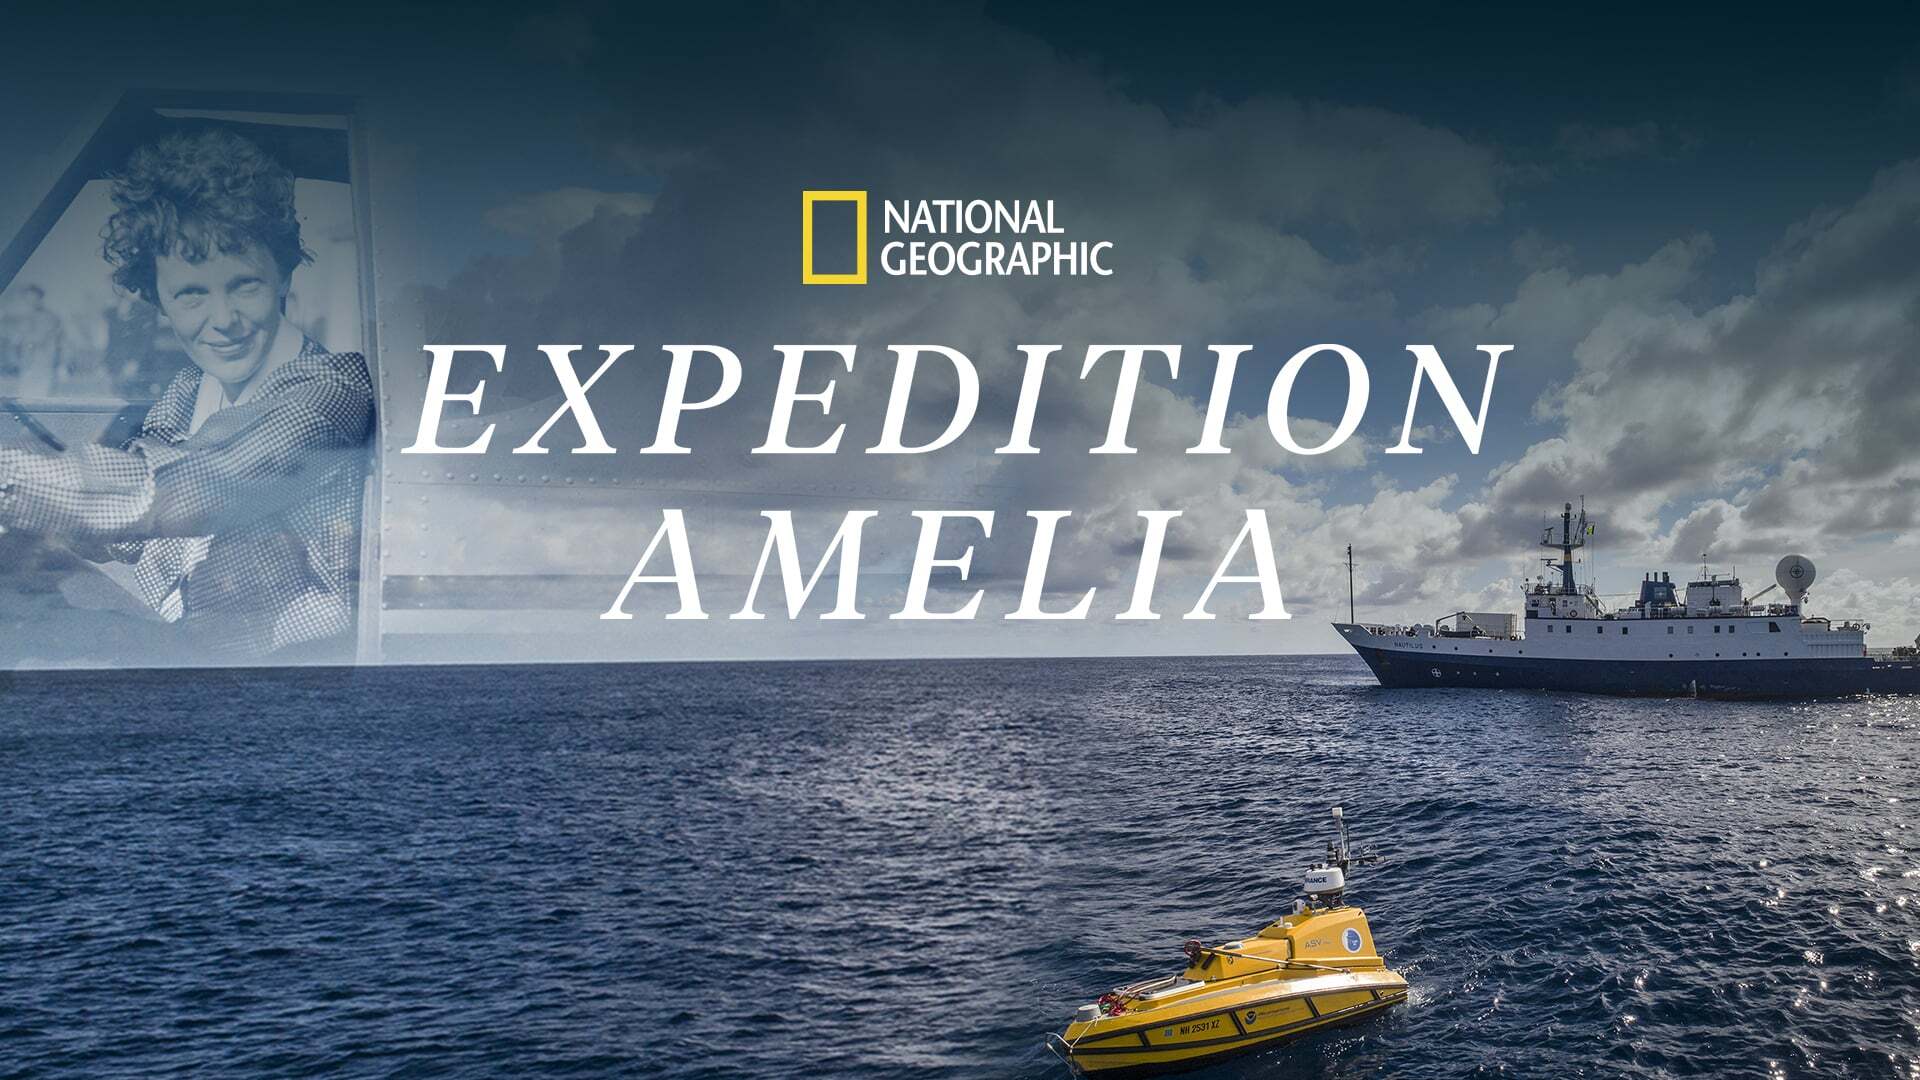 ექსპედიცია ამელია / Expedition Amelia